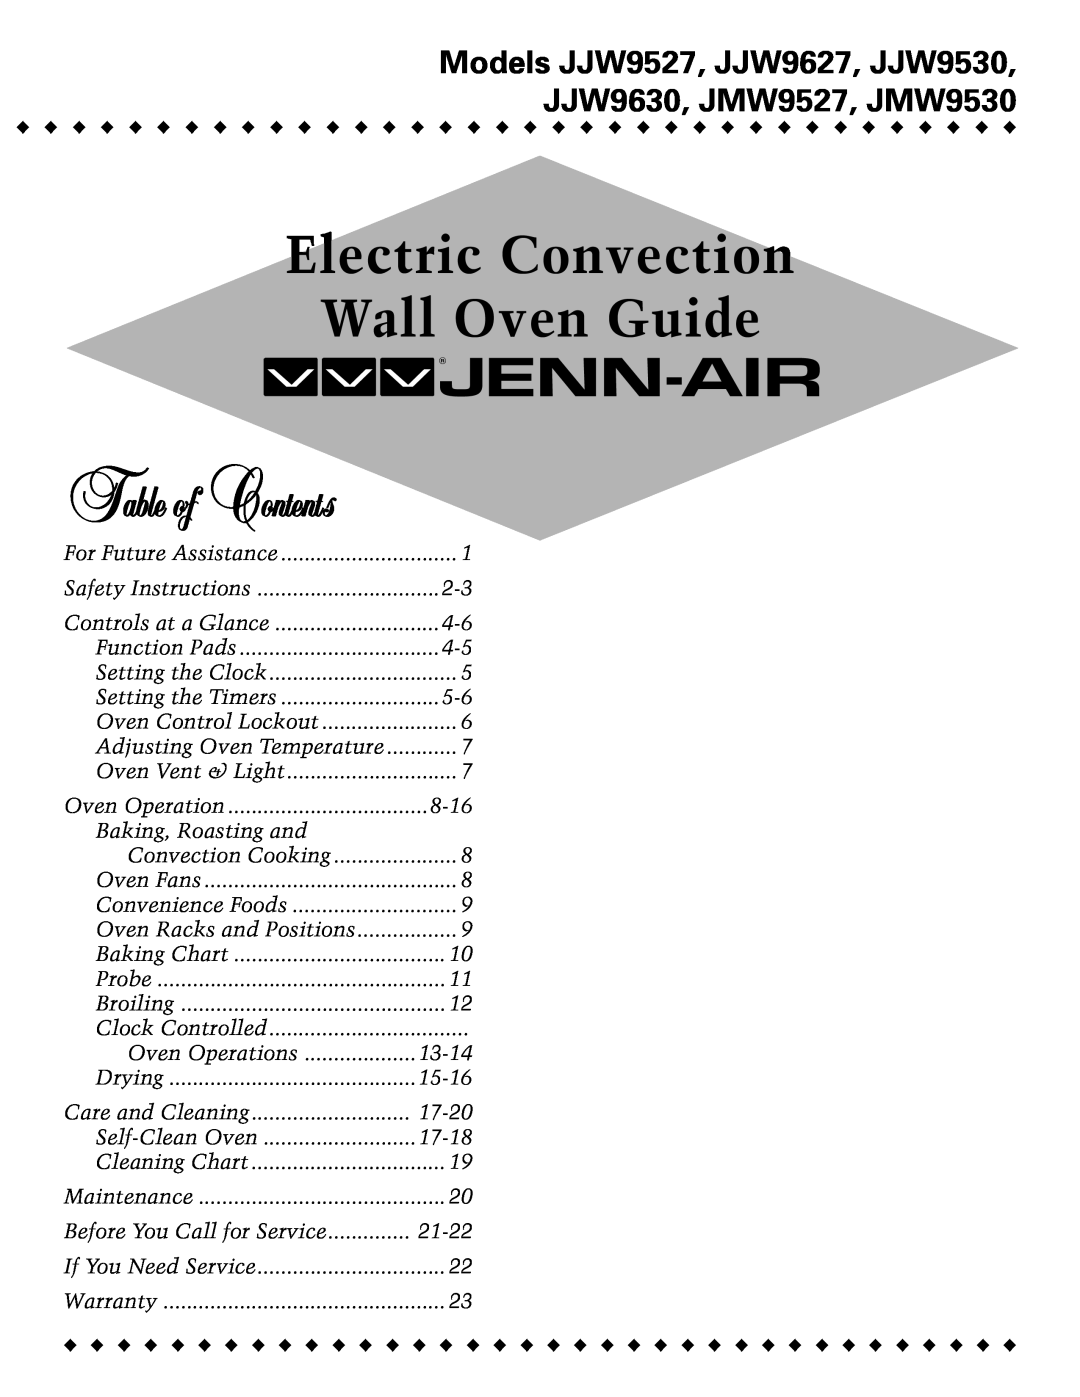 Jenn-Air JJW8630, JJW9527, JJW8627, JJW8527, W3040OP, W30100, W30400, W27400, W2451 service manual 16009721, Issued7/99, Jenn-Air 